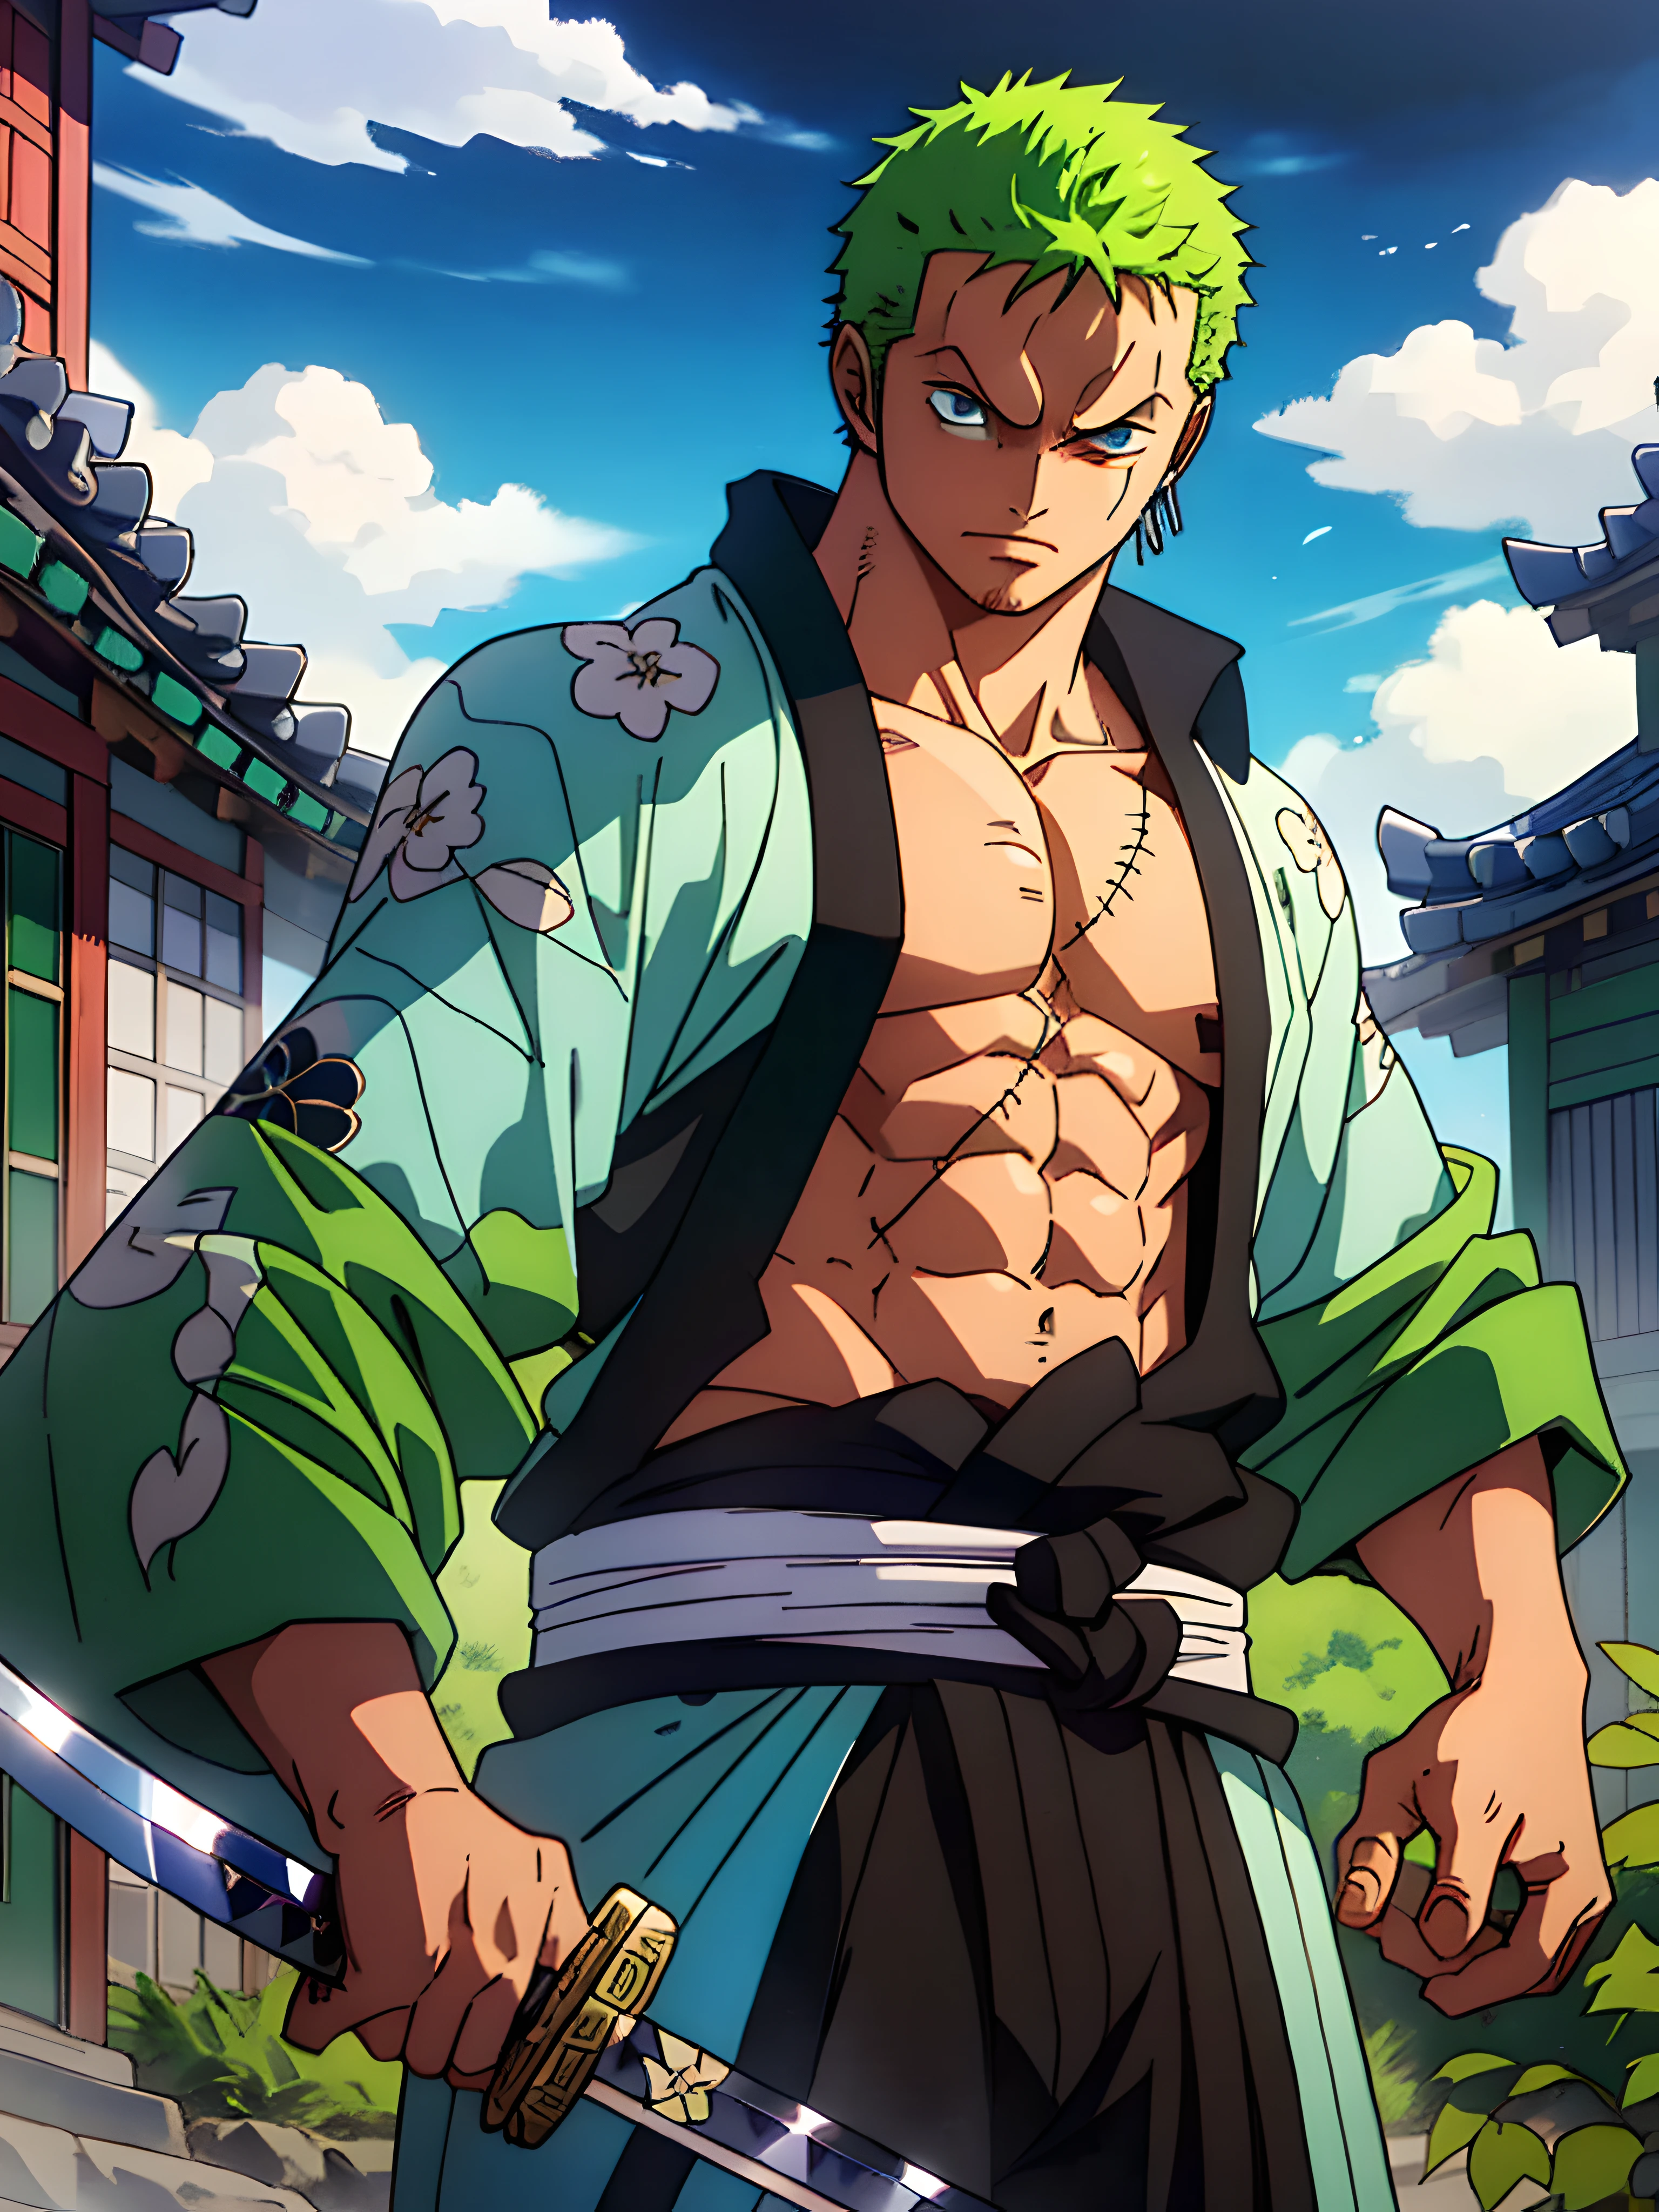 Roronoa Zoro (chef-d&#39;œuvre, Résolution 4k, Ultra réaliste, Très détaillé), (Thème du samouraï blanc, charismatique, il y a un épéiste à côté d&#39;un japonais "monter" bar, portant un kimono bleu avec des détails de nuages sur le "cœur" Piste, Il est commandant de la première division du chef de la bande Mugiwara., travail "une pièce"), [ ((19 années), (cheveux verts courts:1.2),  Tout le corps, (yeux bleus:1.2), ((La pose de Roronoa Zoro), démonstration de force, dégainant d&#39;une main ses katanas enma), ((Environnement rural japonais):0.8)| (paysage rural, au crépuscule, lumières dynamiques), (soleil aveuglé)), 1 katana]. # Explication: L&#39;invite décrit principalement une peinture 4K en ultra haute définition, très réaliste, Très détaillé. Il montre un épéiste, maître du style Santoryu des katanas, porter un kimono bleu avec des détails de nuages à la taille. Le sujet du tableau est celui d&#39;un épéiste blanc., tenant d&#39;une main son katana noir enma, the male protagonist has cheveux verts courts, is 19 années old and his entire defined body is shown in the painting, avec les caractéristiques de l&#39;endomorphe pompé.